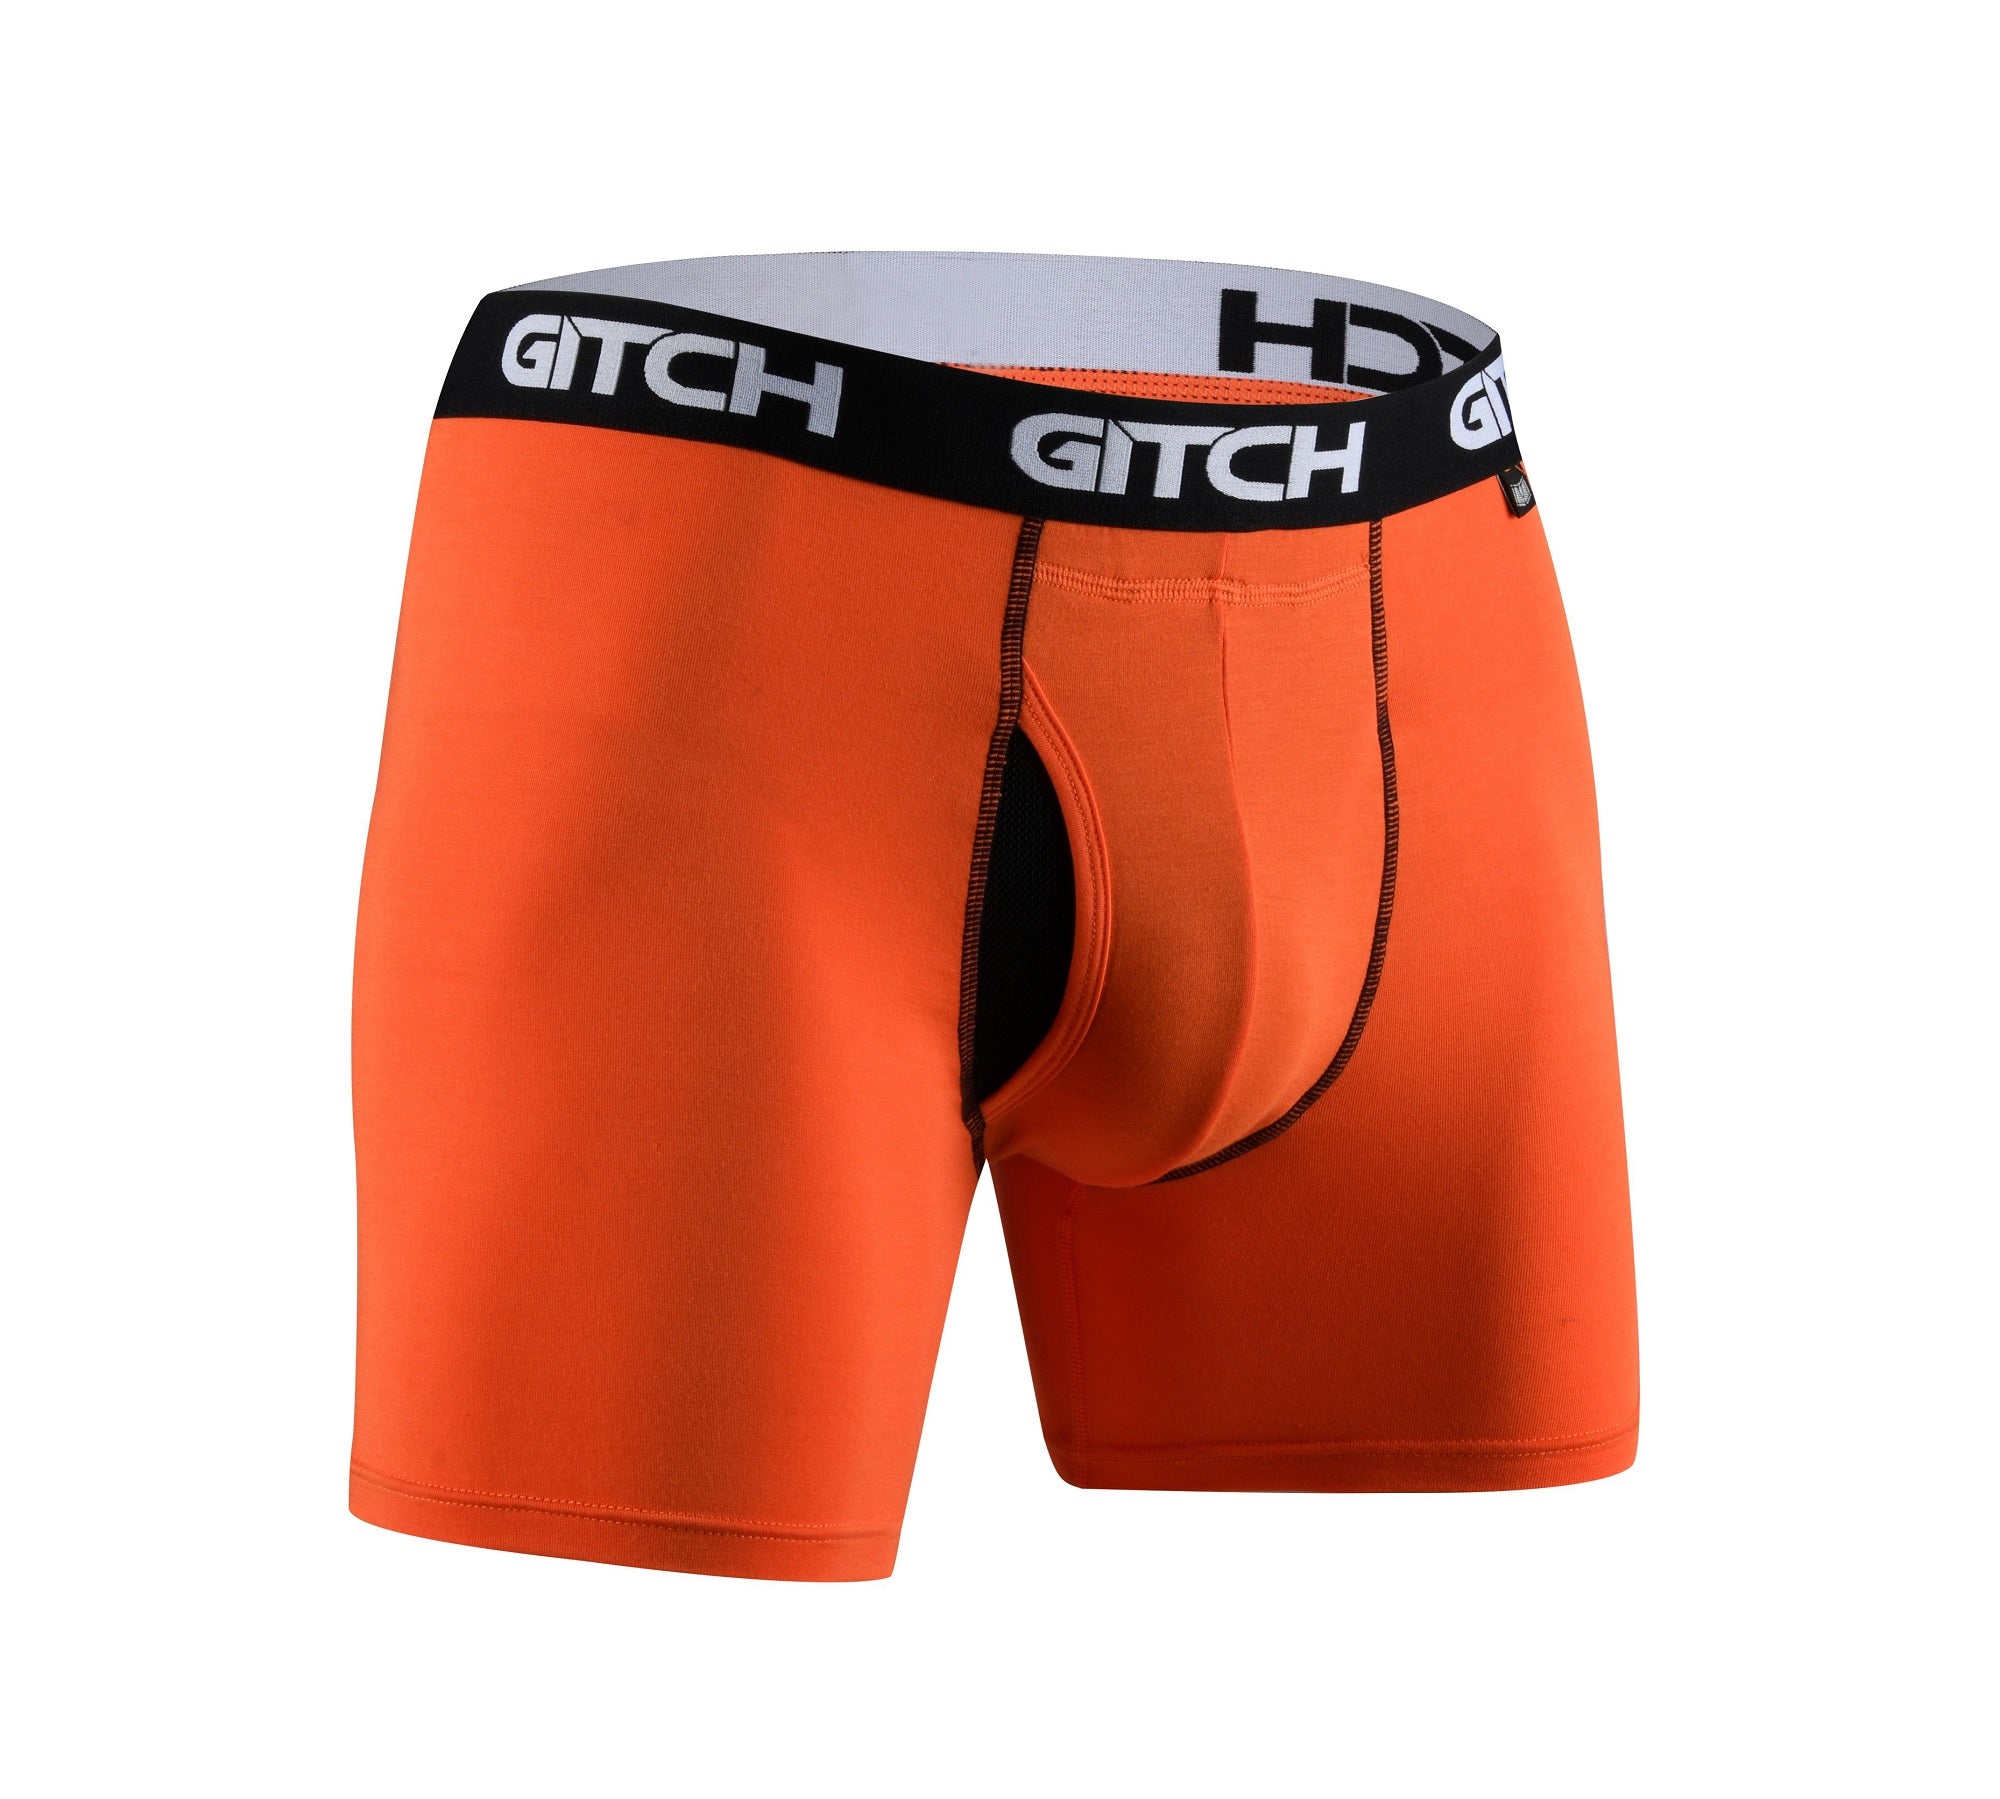 Gitch Underwear Mens Boxer Brief Top Prospect Premium Soft Stretch Mod ...